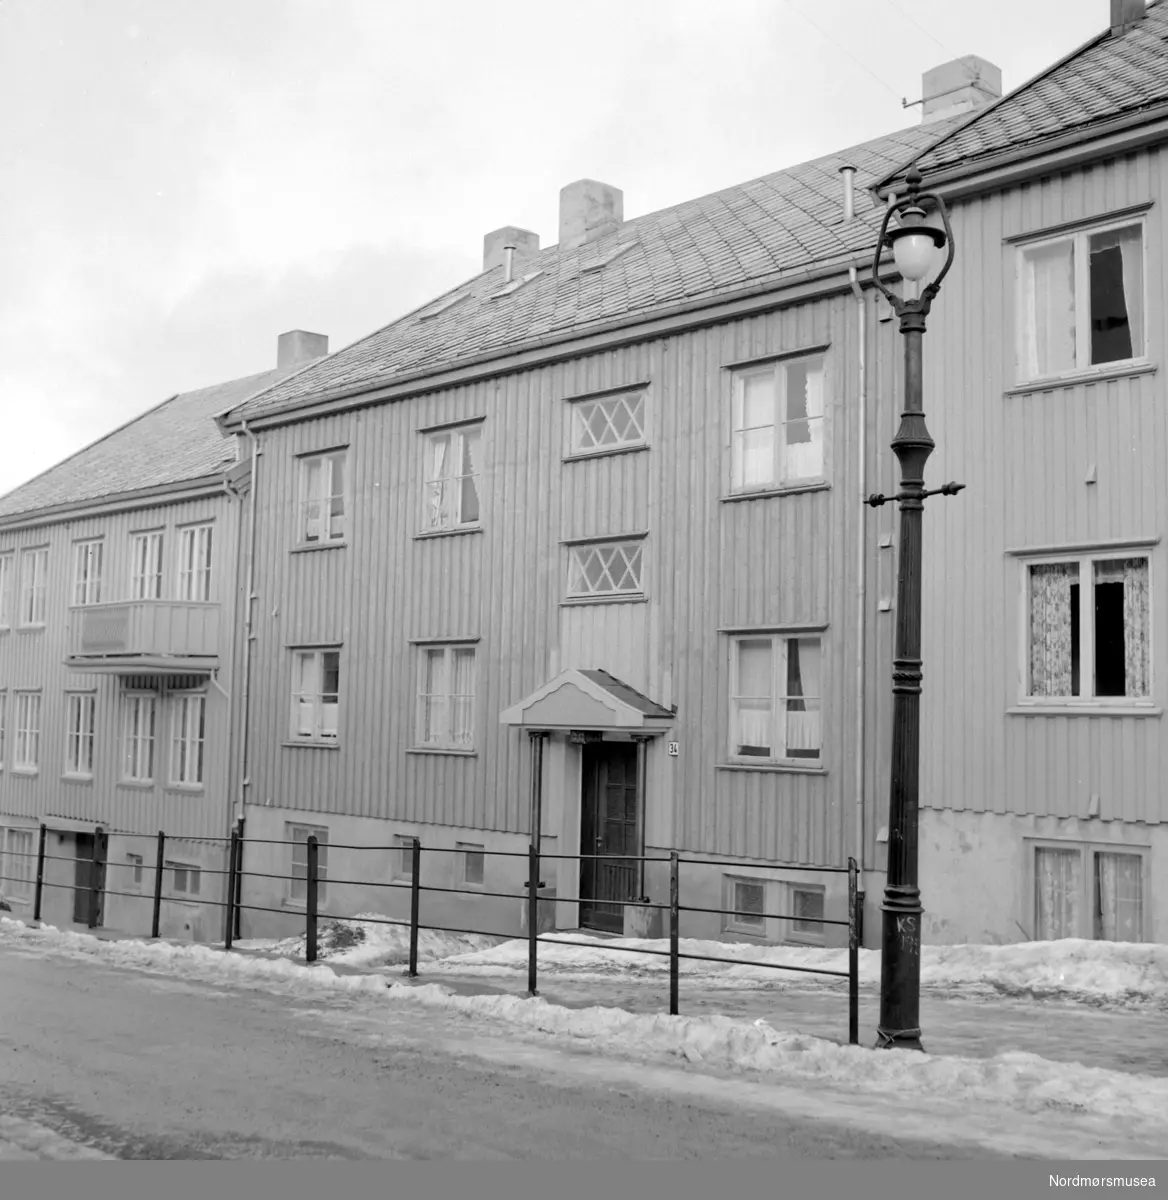 Foto av en bygård, mest trolig i Kristiansund. Datering er trolig mellom 1955-1965. Fotograf er Nils Williams i Kristiansund. Fra Nordmøre museums fotosamlinger.